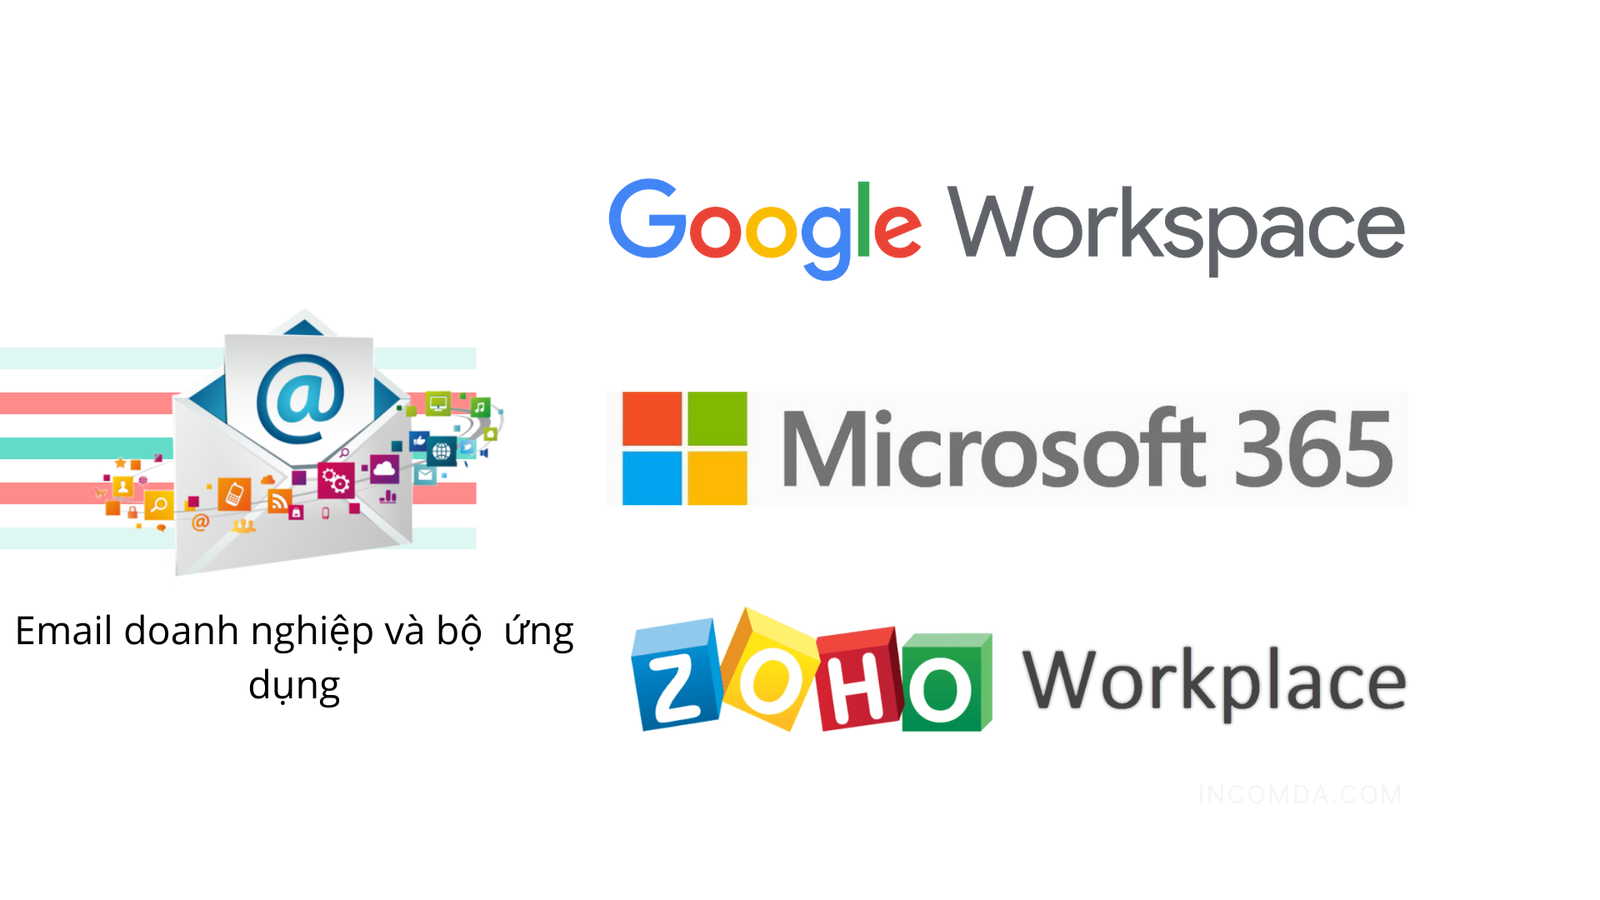 Google Workspace, Microsoft 365 và Zoho Workplace - Chi phí và tính năng